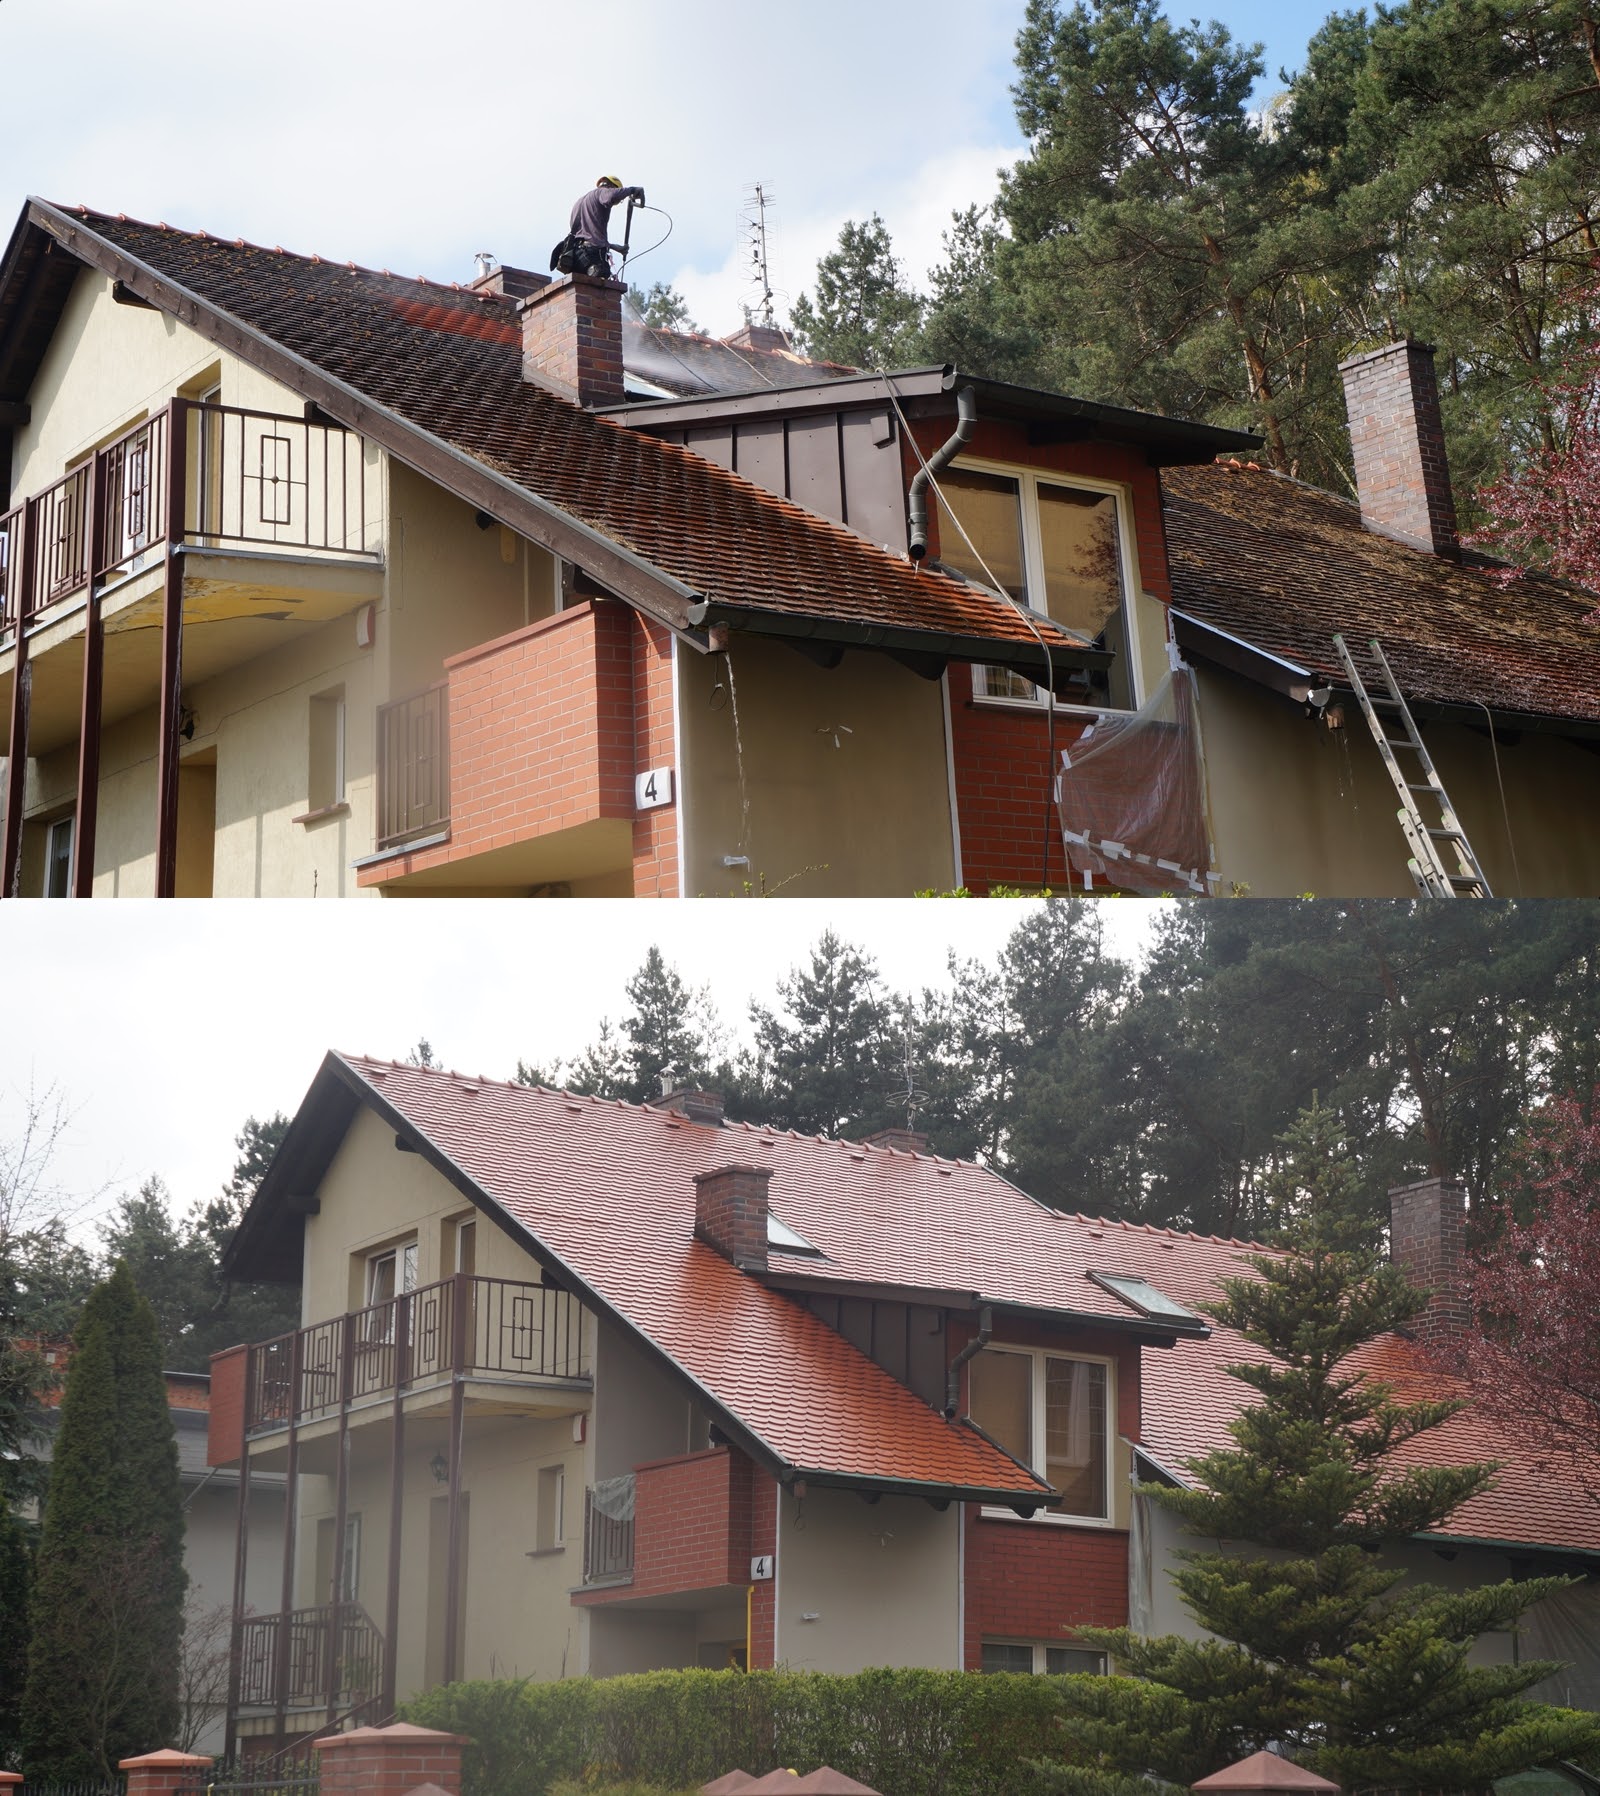 Mycie i malowanie dachu przed założeniem paneli fotowoltaicznych.